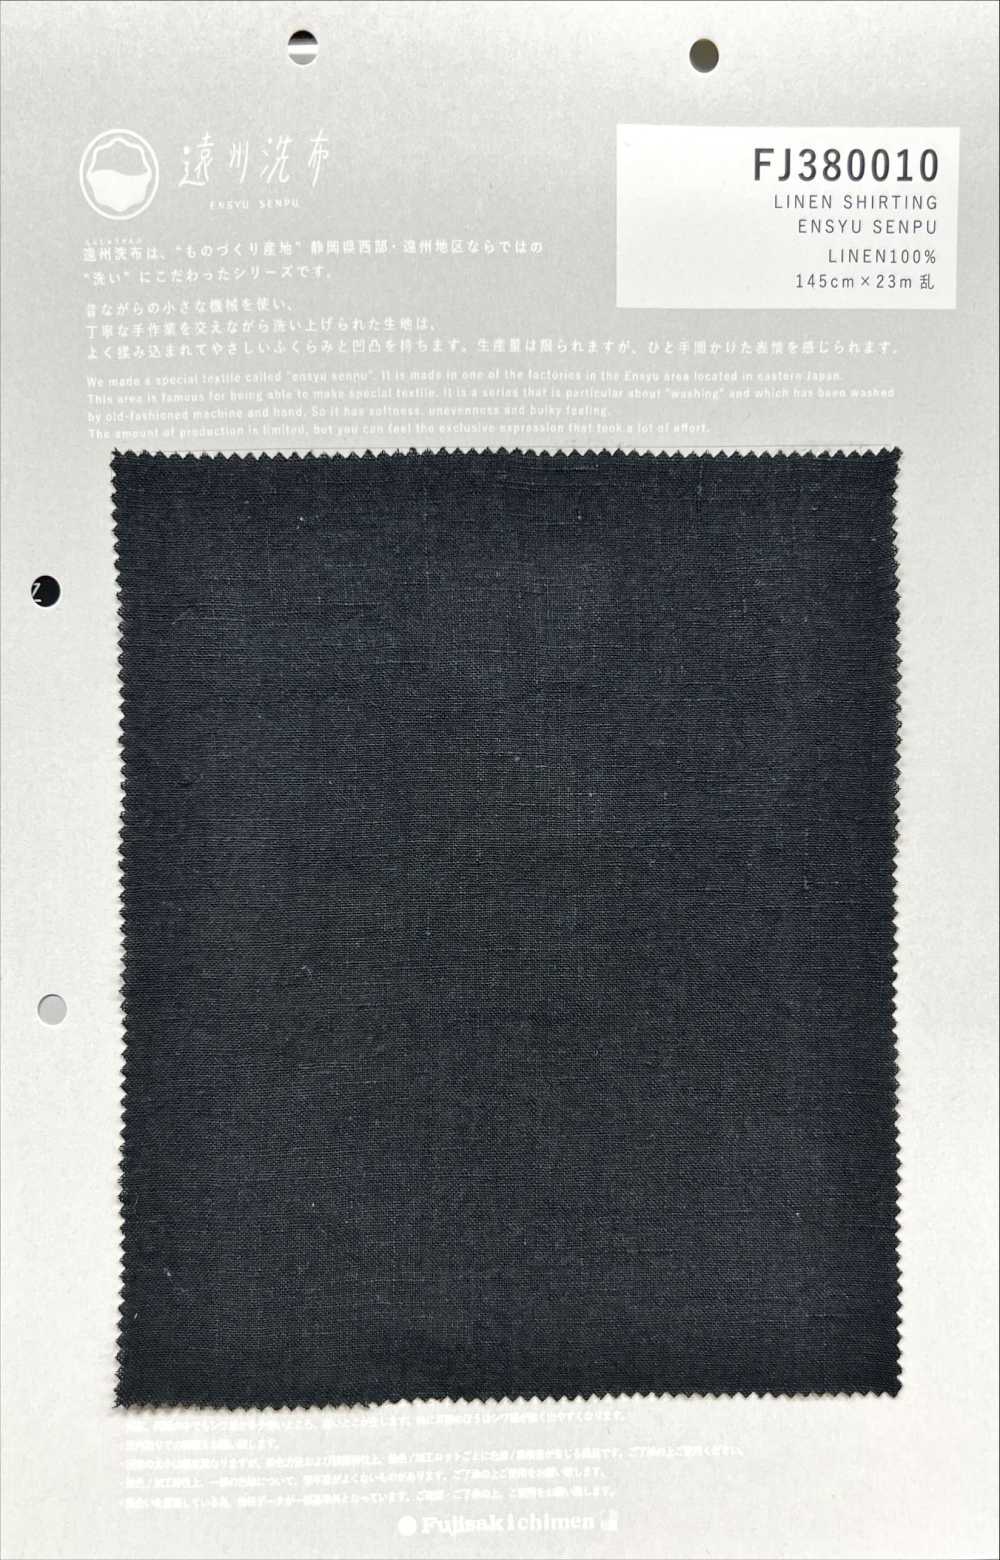 FJ380010 ÁO PHIM LINEN ENSYU SENPU[Vải] Fujisaki Textile